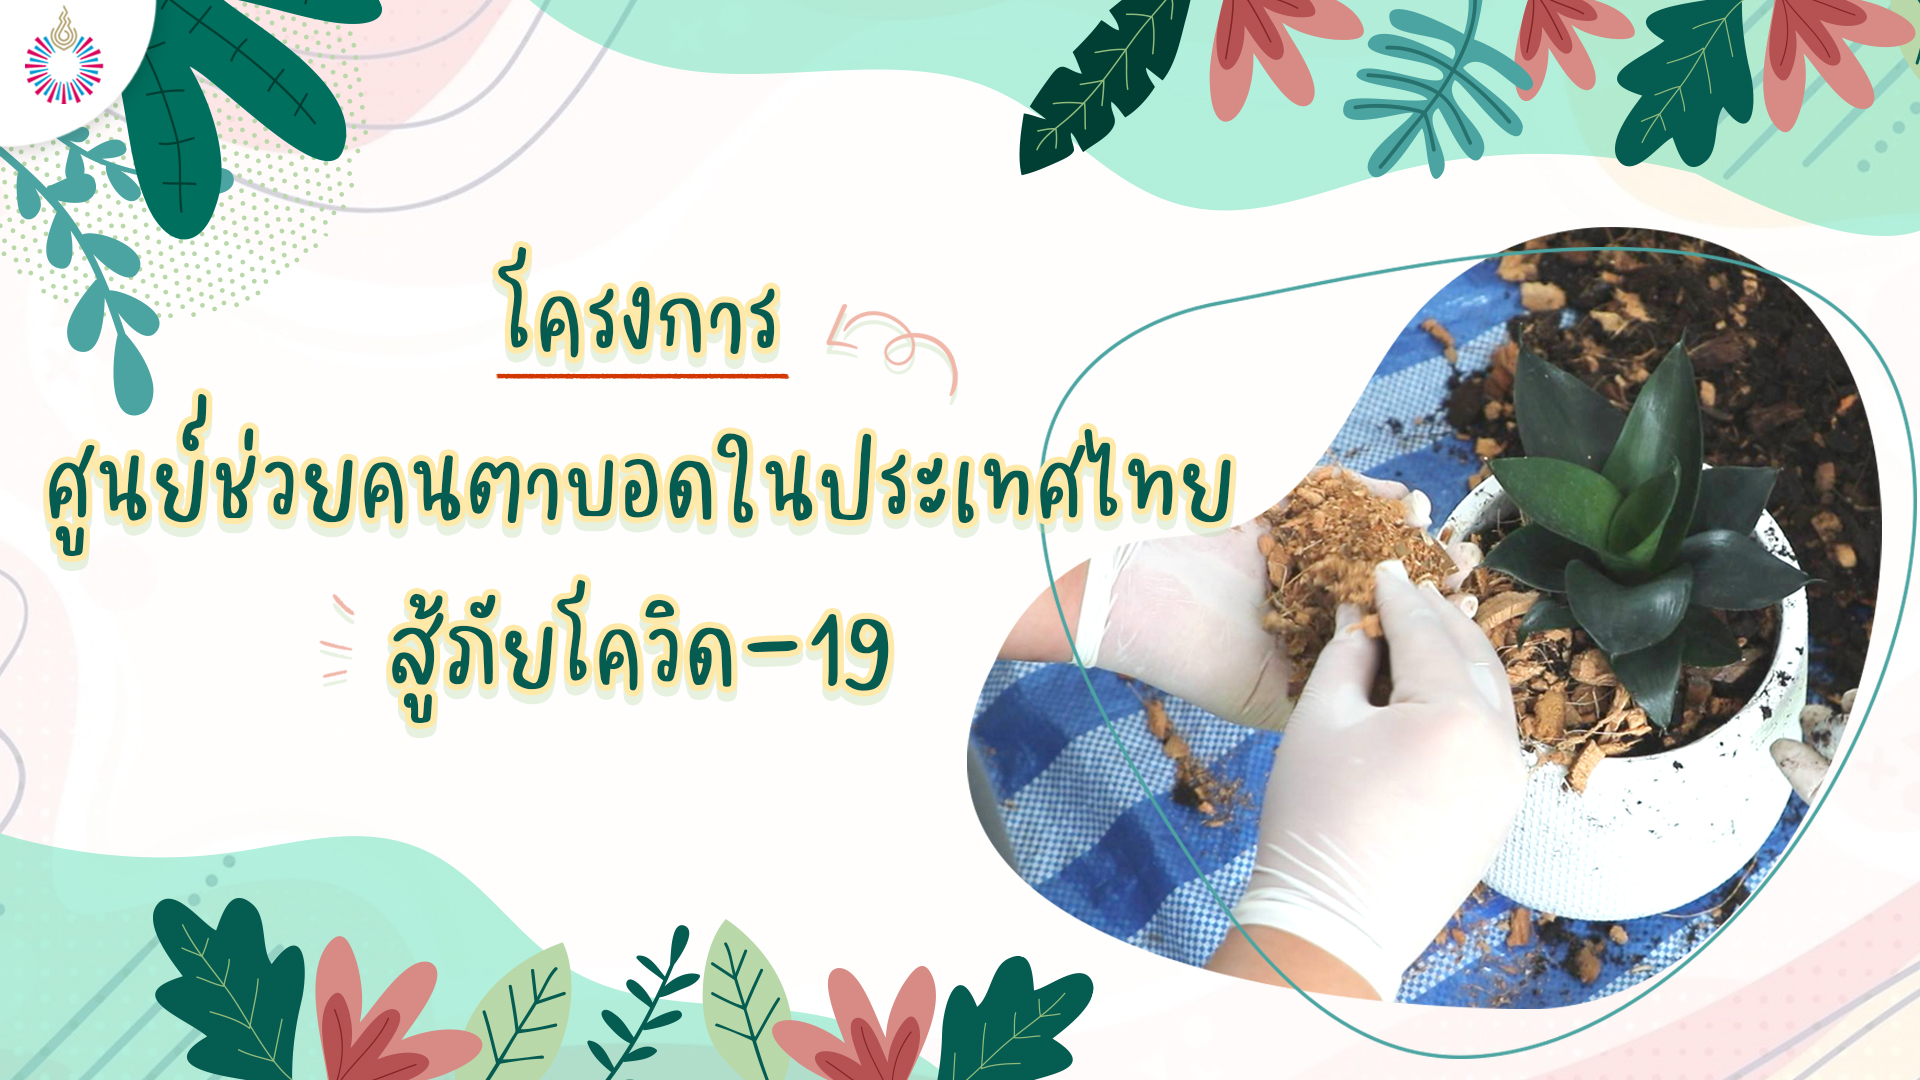 โครงการดอกไม้ให้คุณ วิทยาลัยนวัตกรรมสังคม ร่วมกับ สมาคมคนตาบอดแห่งประเทศไทย